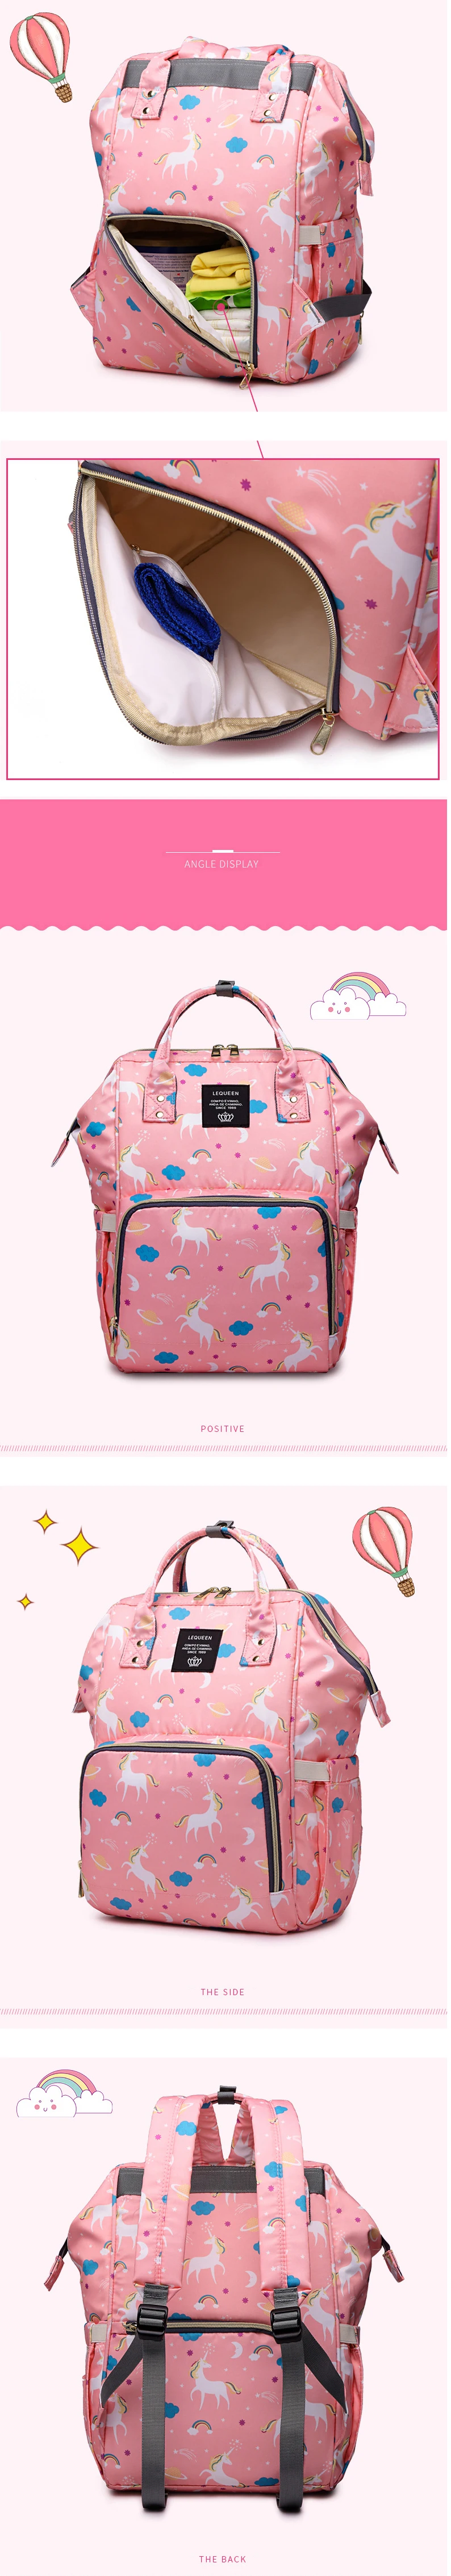 Сумка для детских подгузников, модный рюкзак для мам, сумка для мам, брендовый рюкзак для мам, сумки для подгузников, Bolsa Maternidade